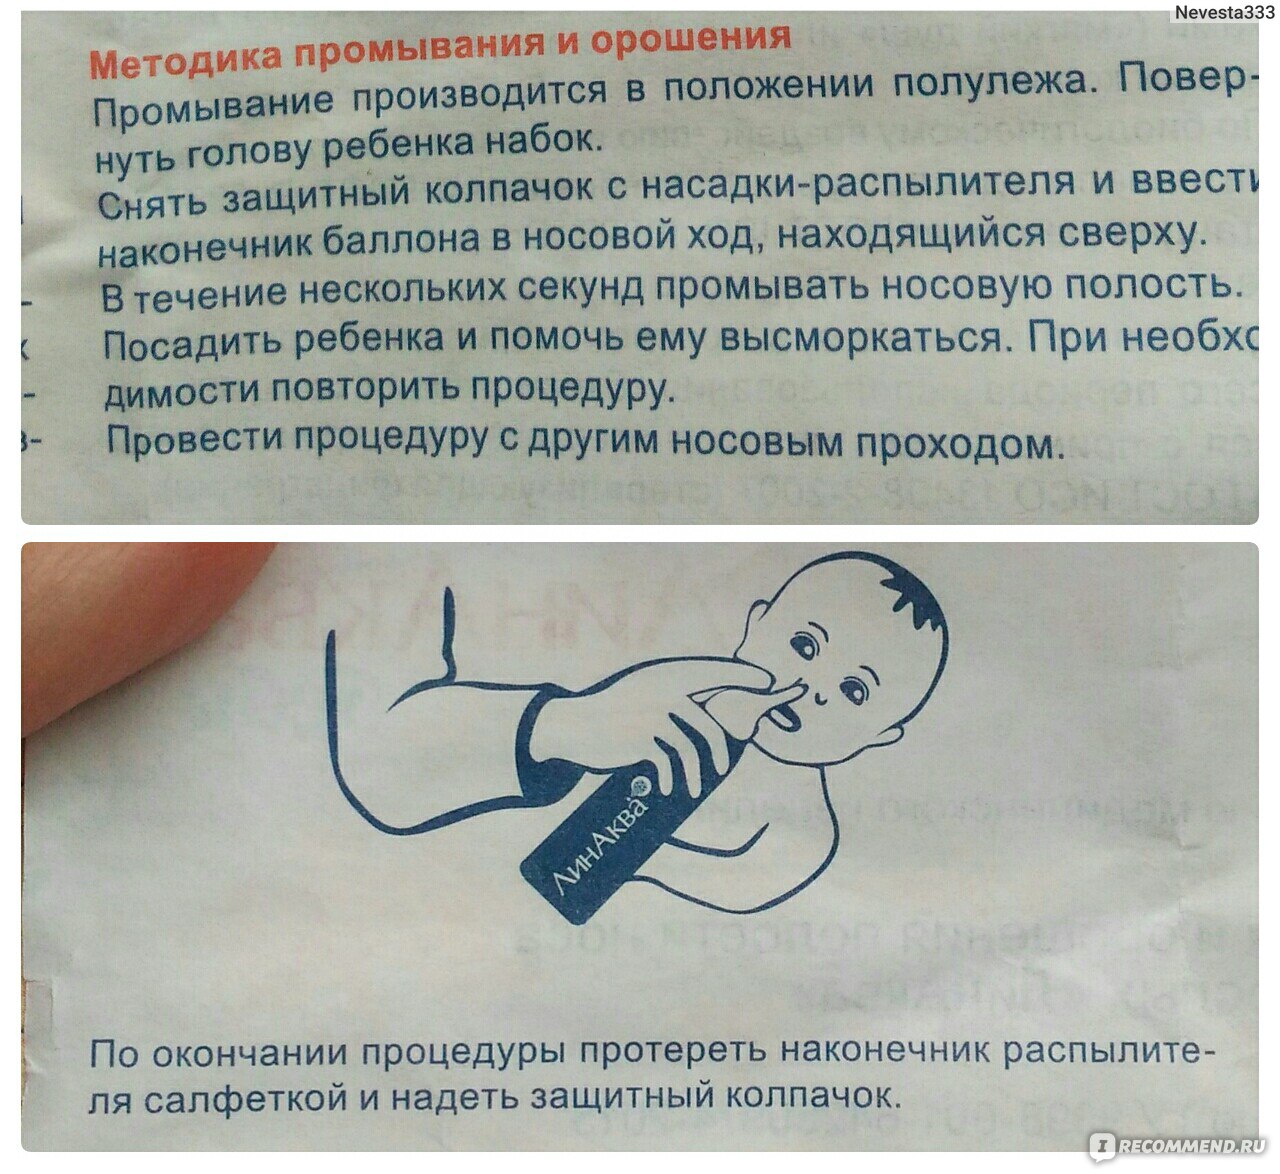 Как промыть нос младенцу. Как промывать нос. Промывание носа у грудничка аквалором. Как правильно промывать нос ребенку. Как правильно промывать нос ребёнку 2 года.